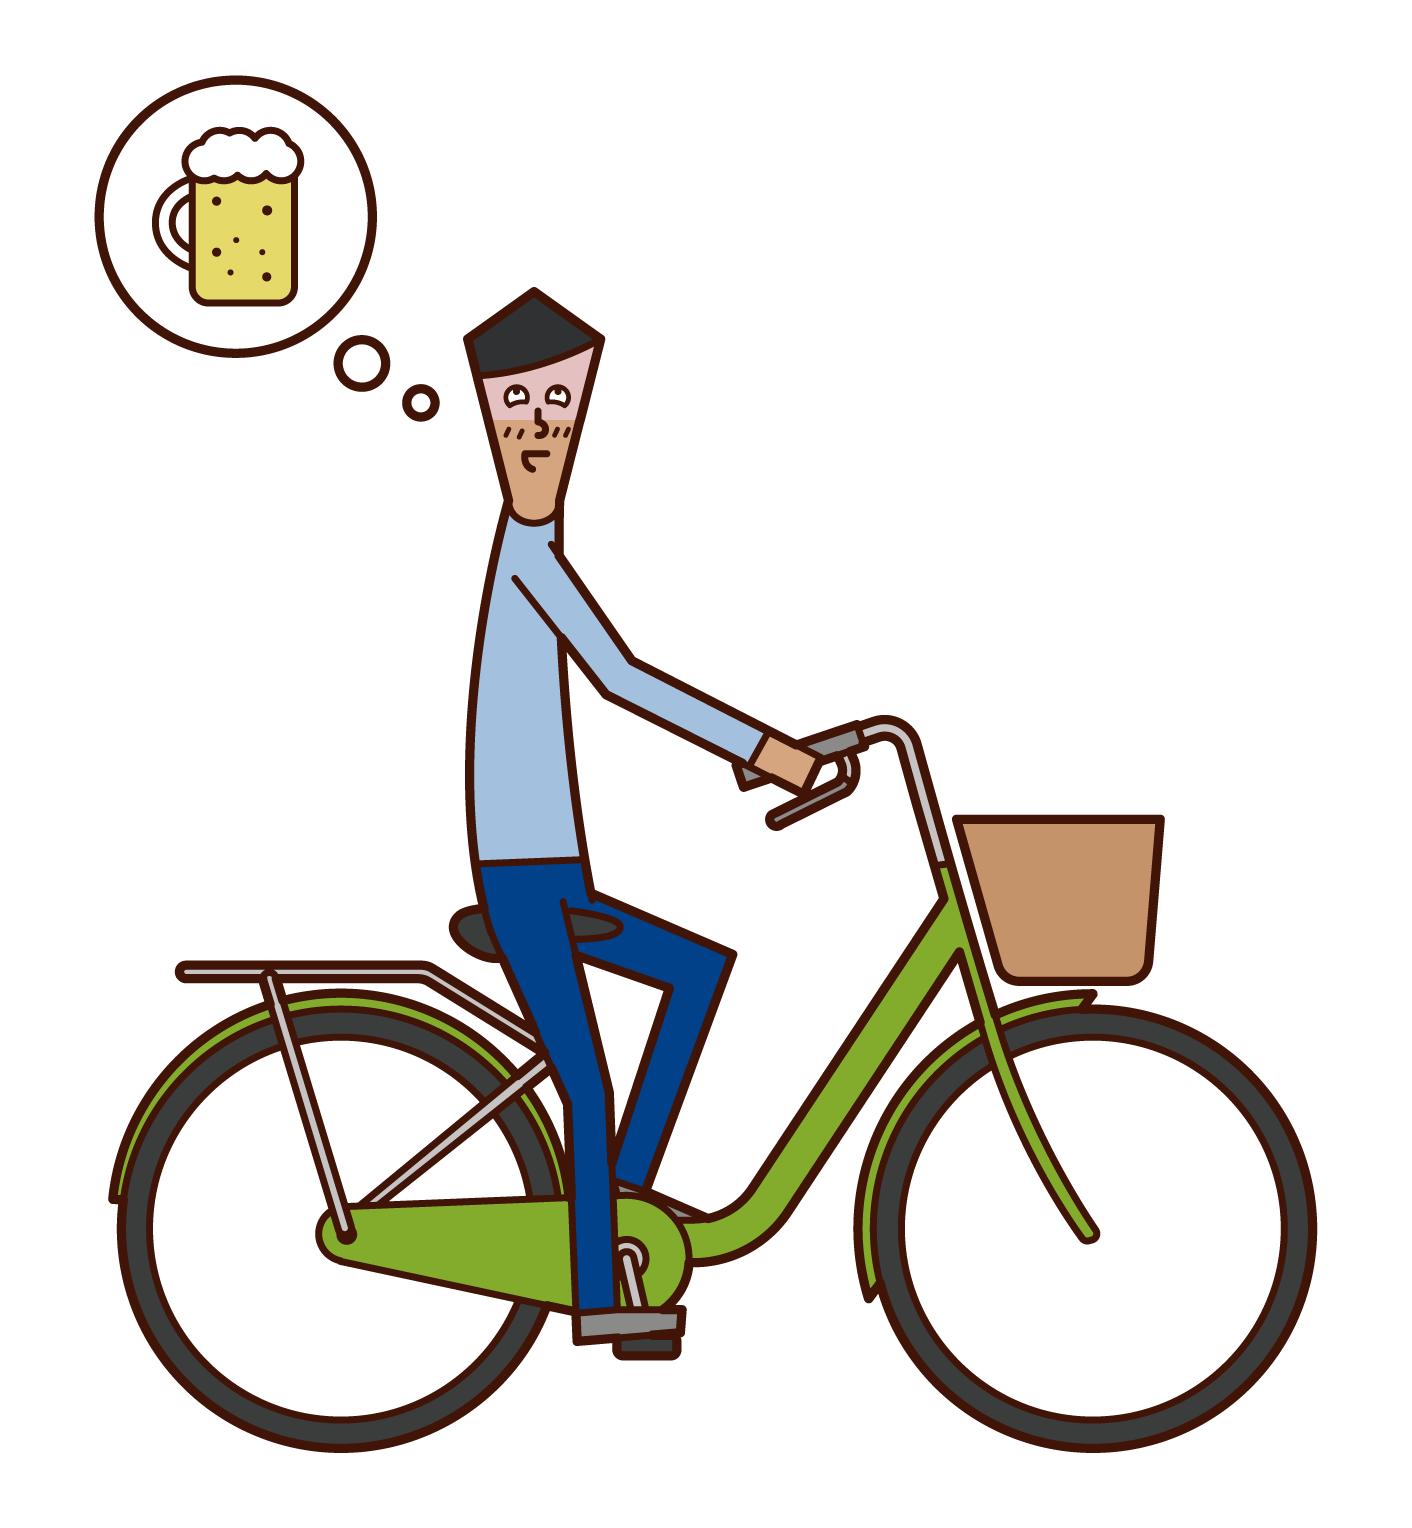 自転車で飲酒運転をする人 男性 のイラスト フリーイラスト素材 Kukukeke ククケケ